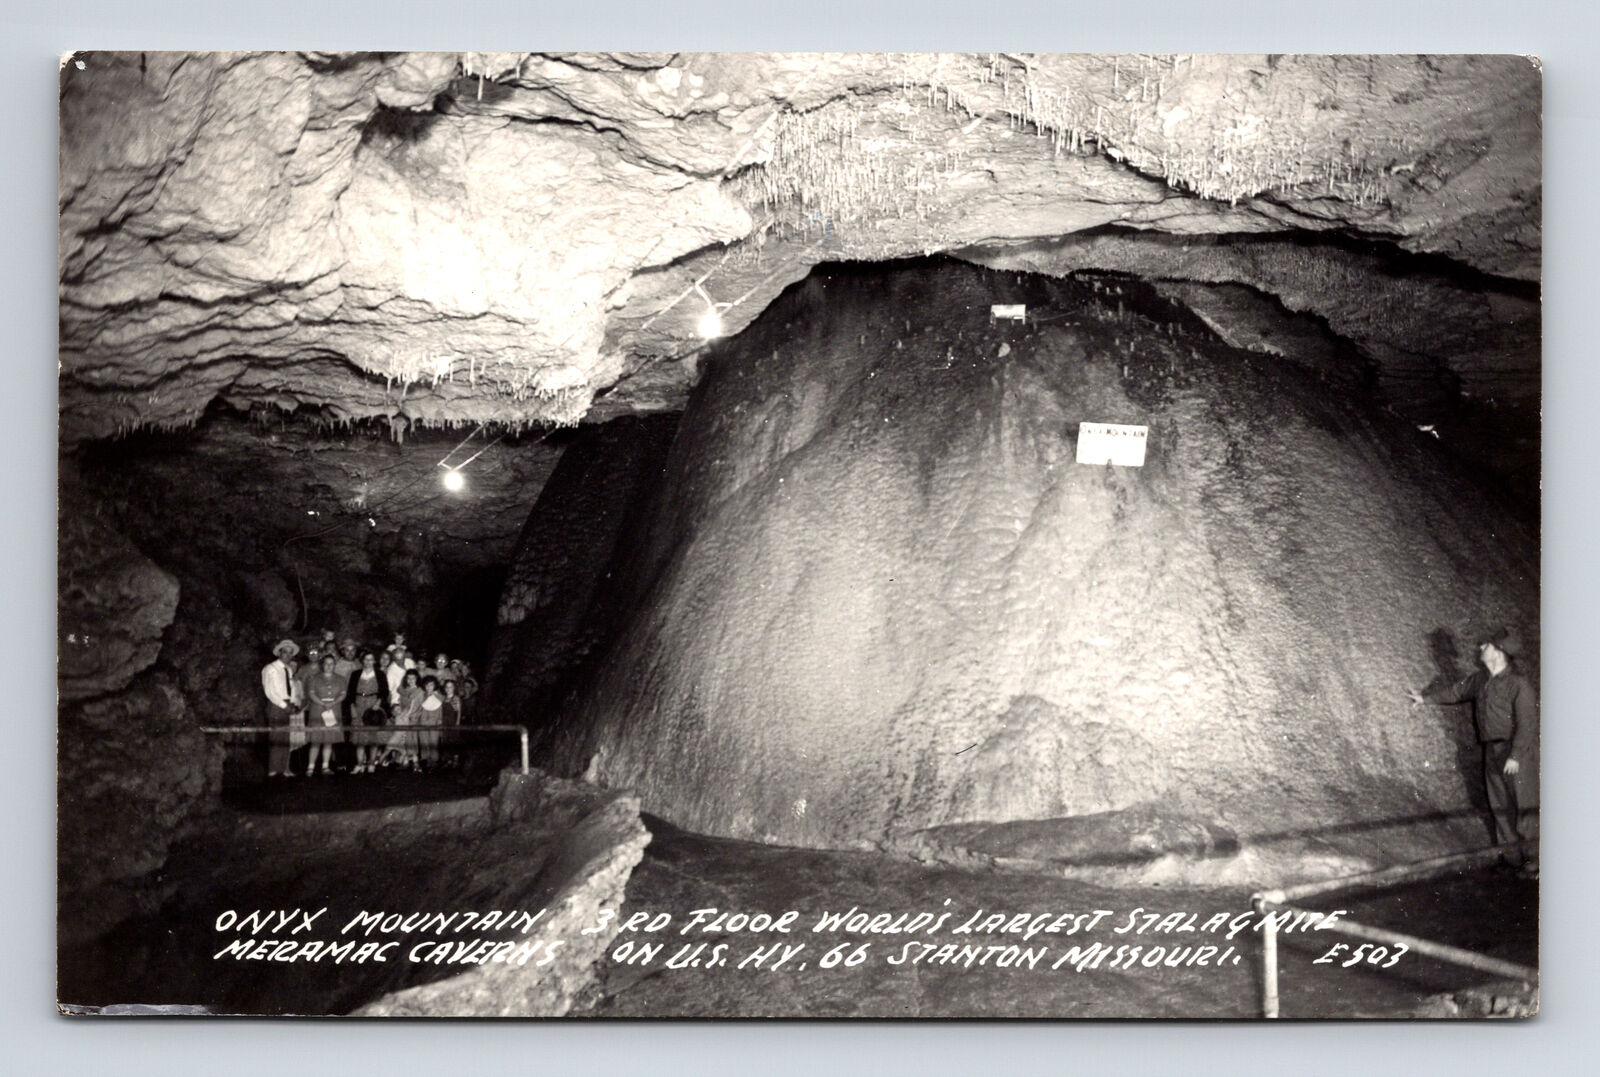 1953 RPPC Onyx Mountain Meramec Caverns US Route 66 Stanton Missouri MO Postcard